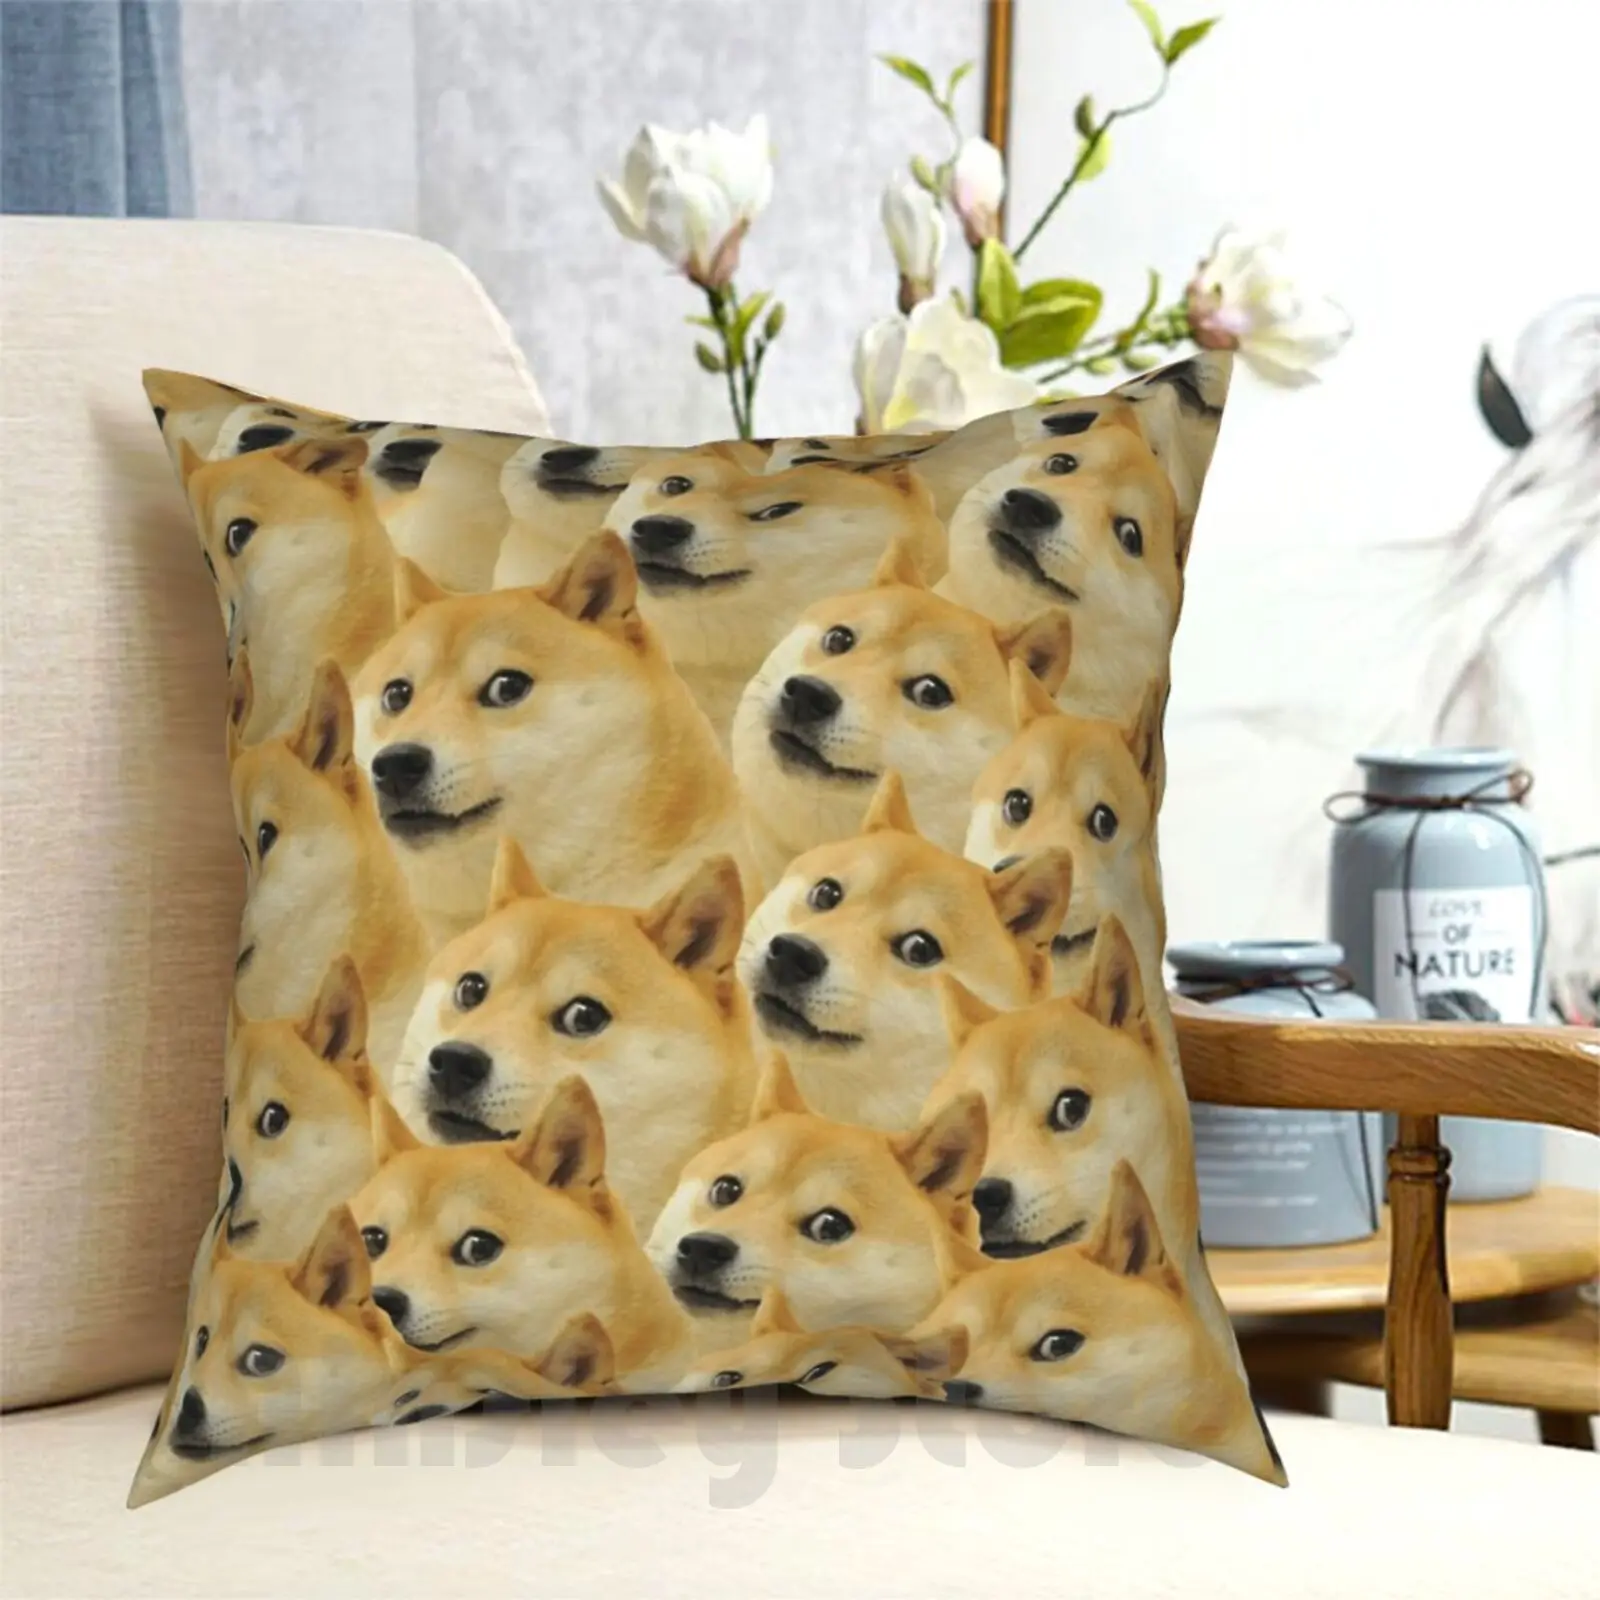 Doge Travesseiro Impresso Casa Macio DIY fronha de Doge Meme Dank Memes Legal Incrível Cão Animais Cães Animal Bonito Wow